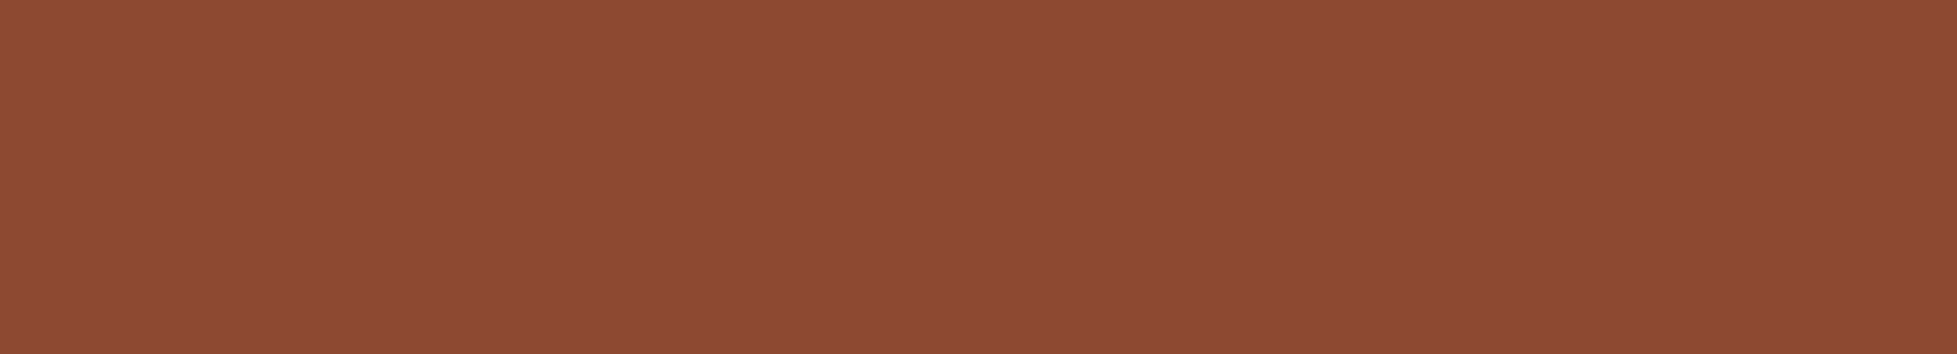 réz barna színű lemez